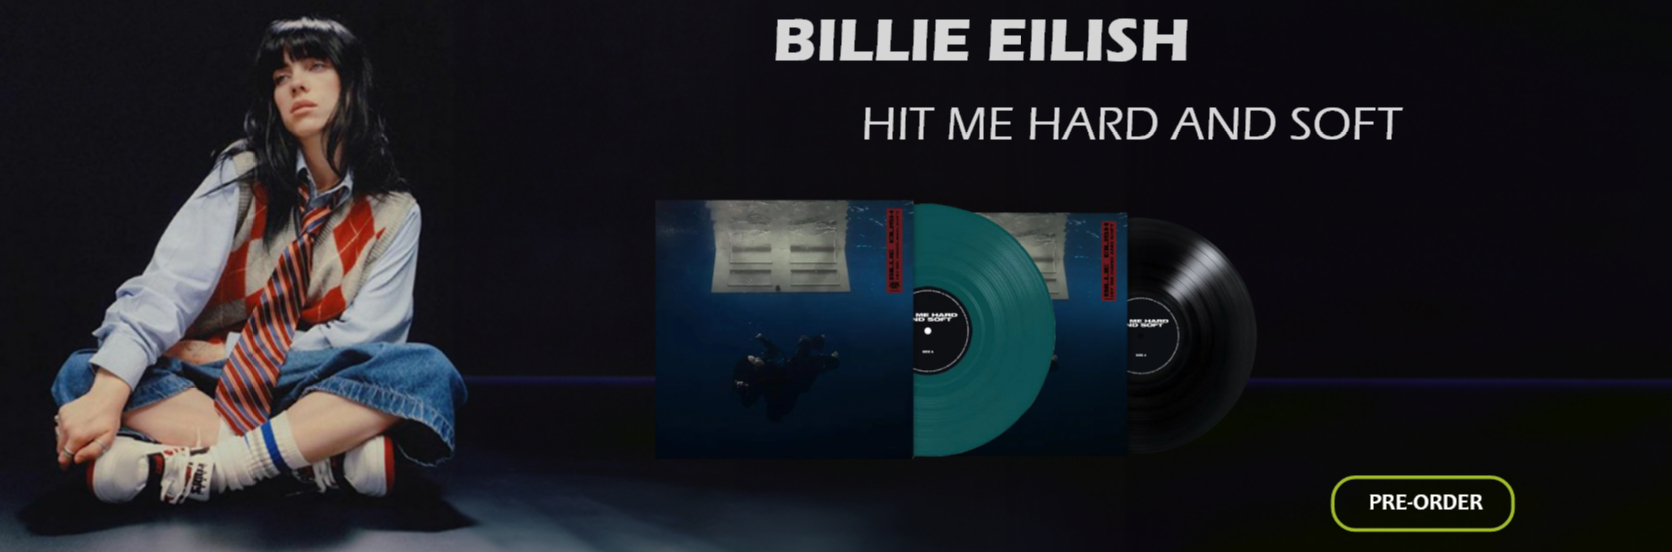 Billie Eilish Hit Me Hard And Soft